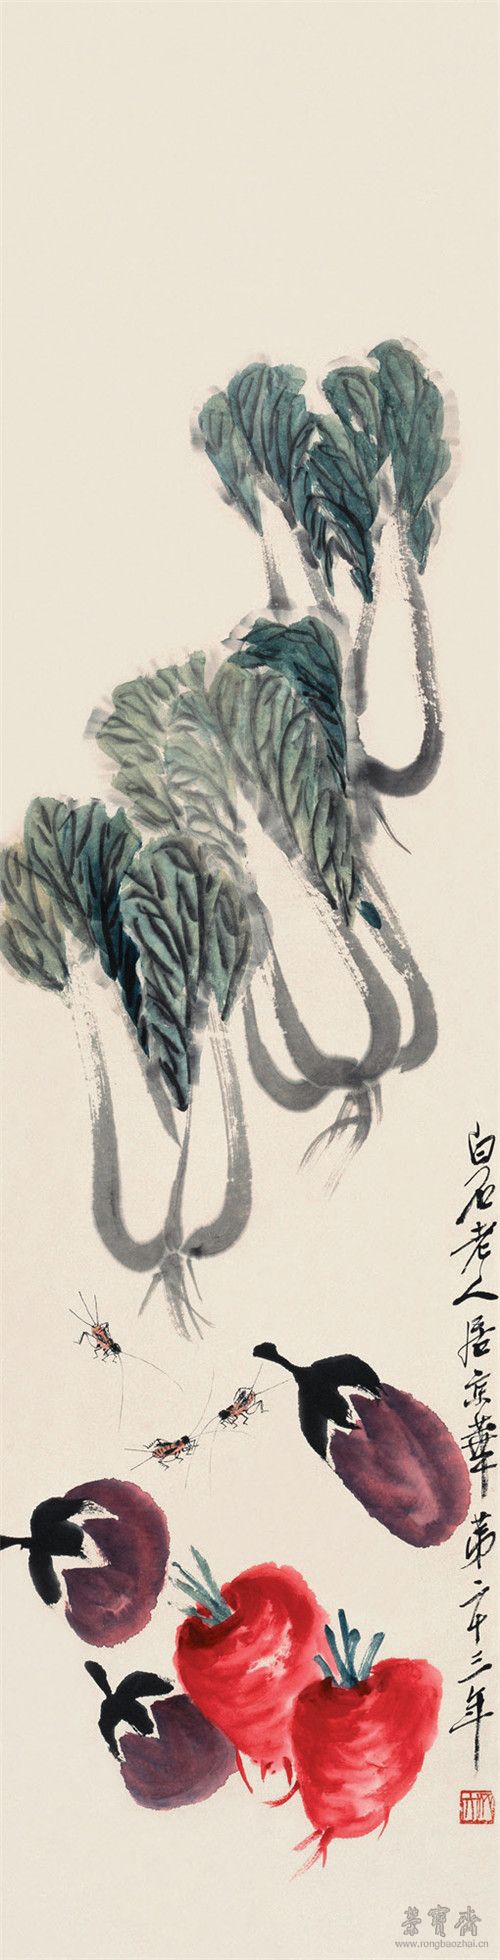 齐白石 蔬菜蟋蟀 133cm×33.5cm 纸本设色 1937年 北京画院藏